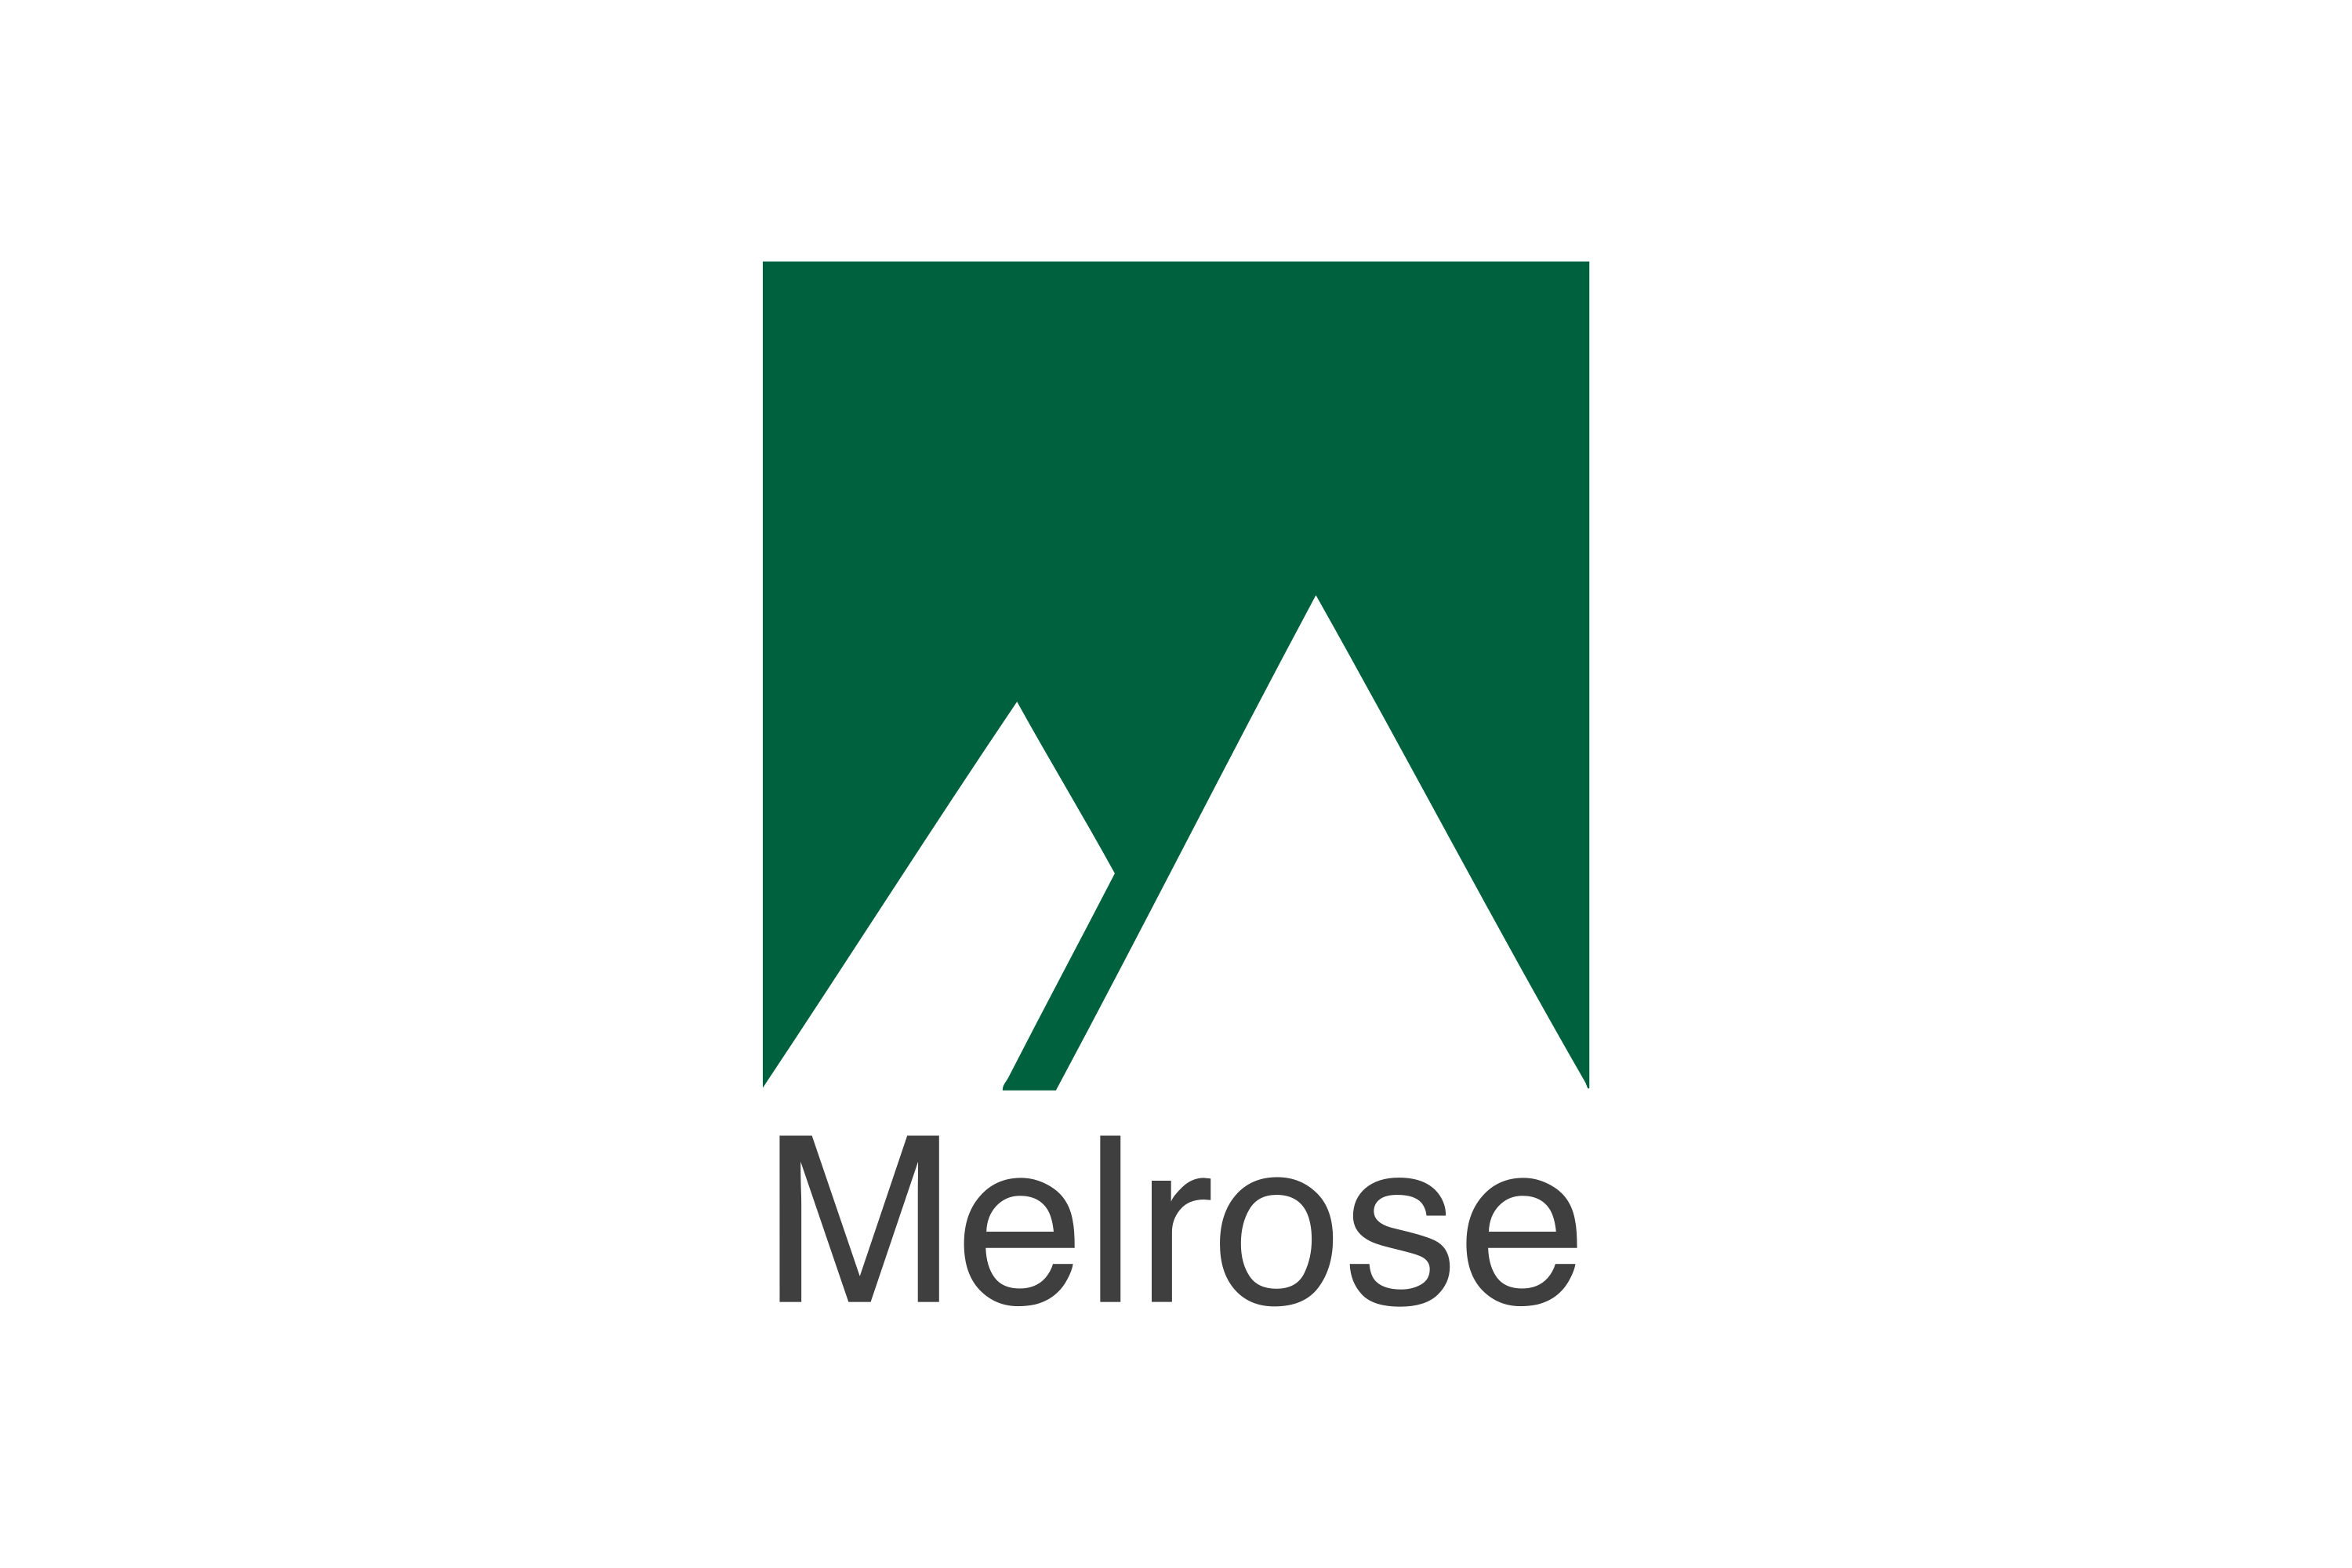 Melrose Industries Logo